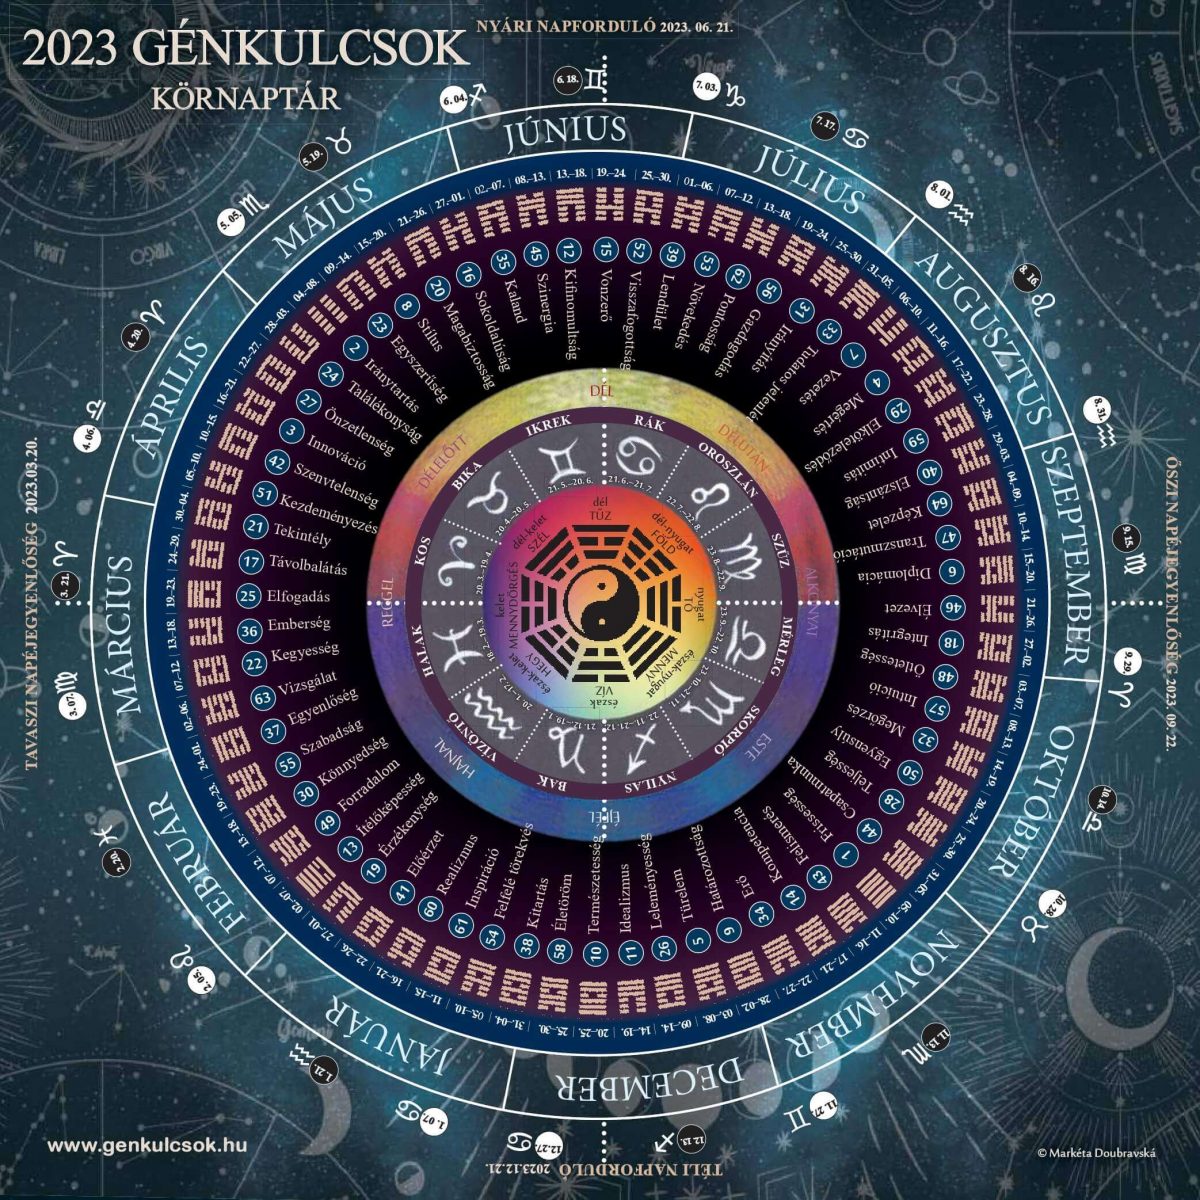 2023 Génkulcsok Körnaptár (32×32 cm)